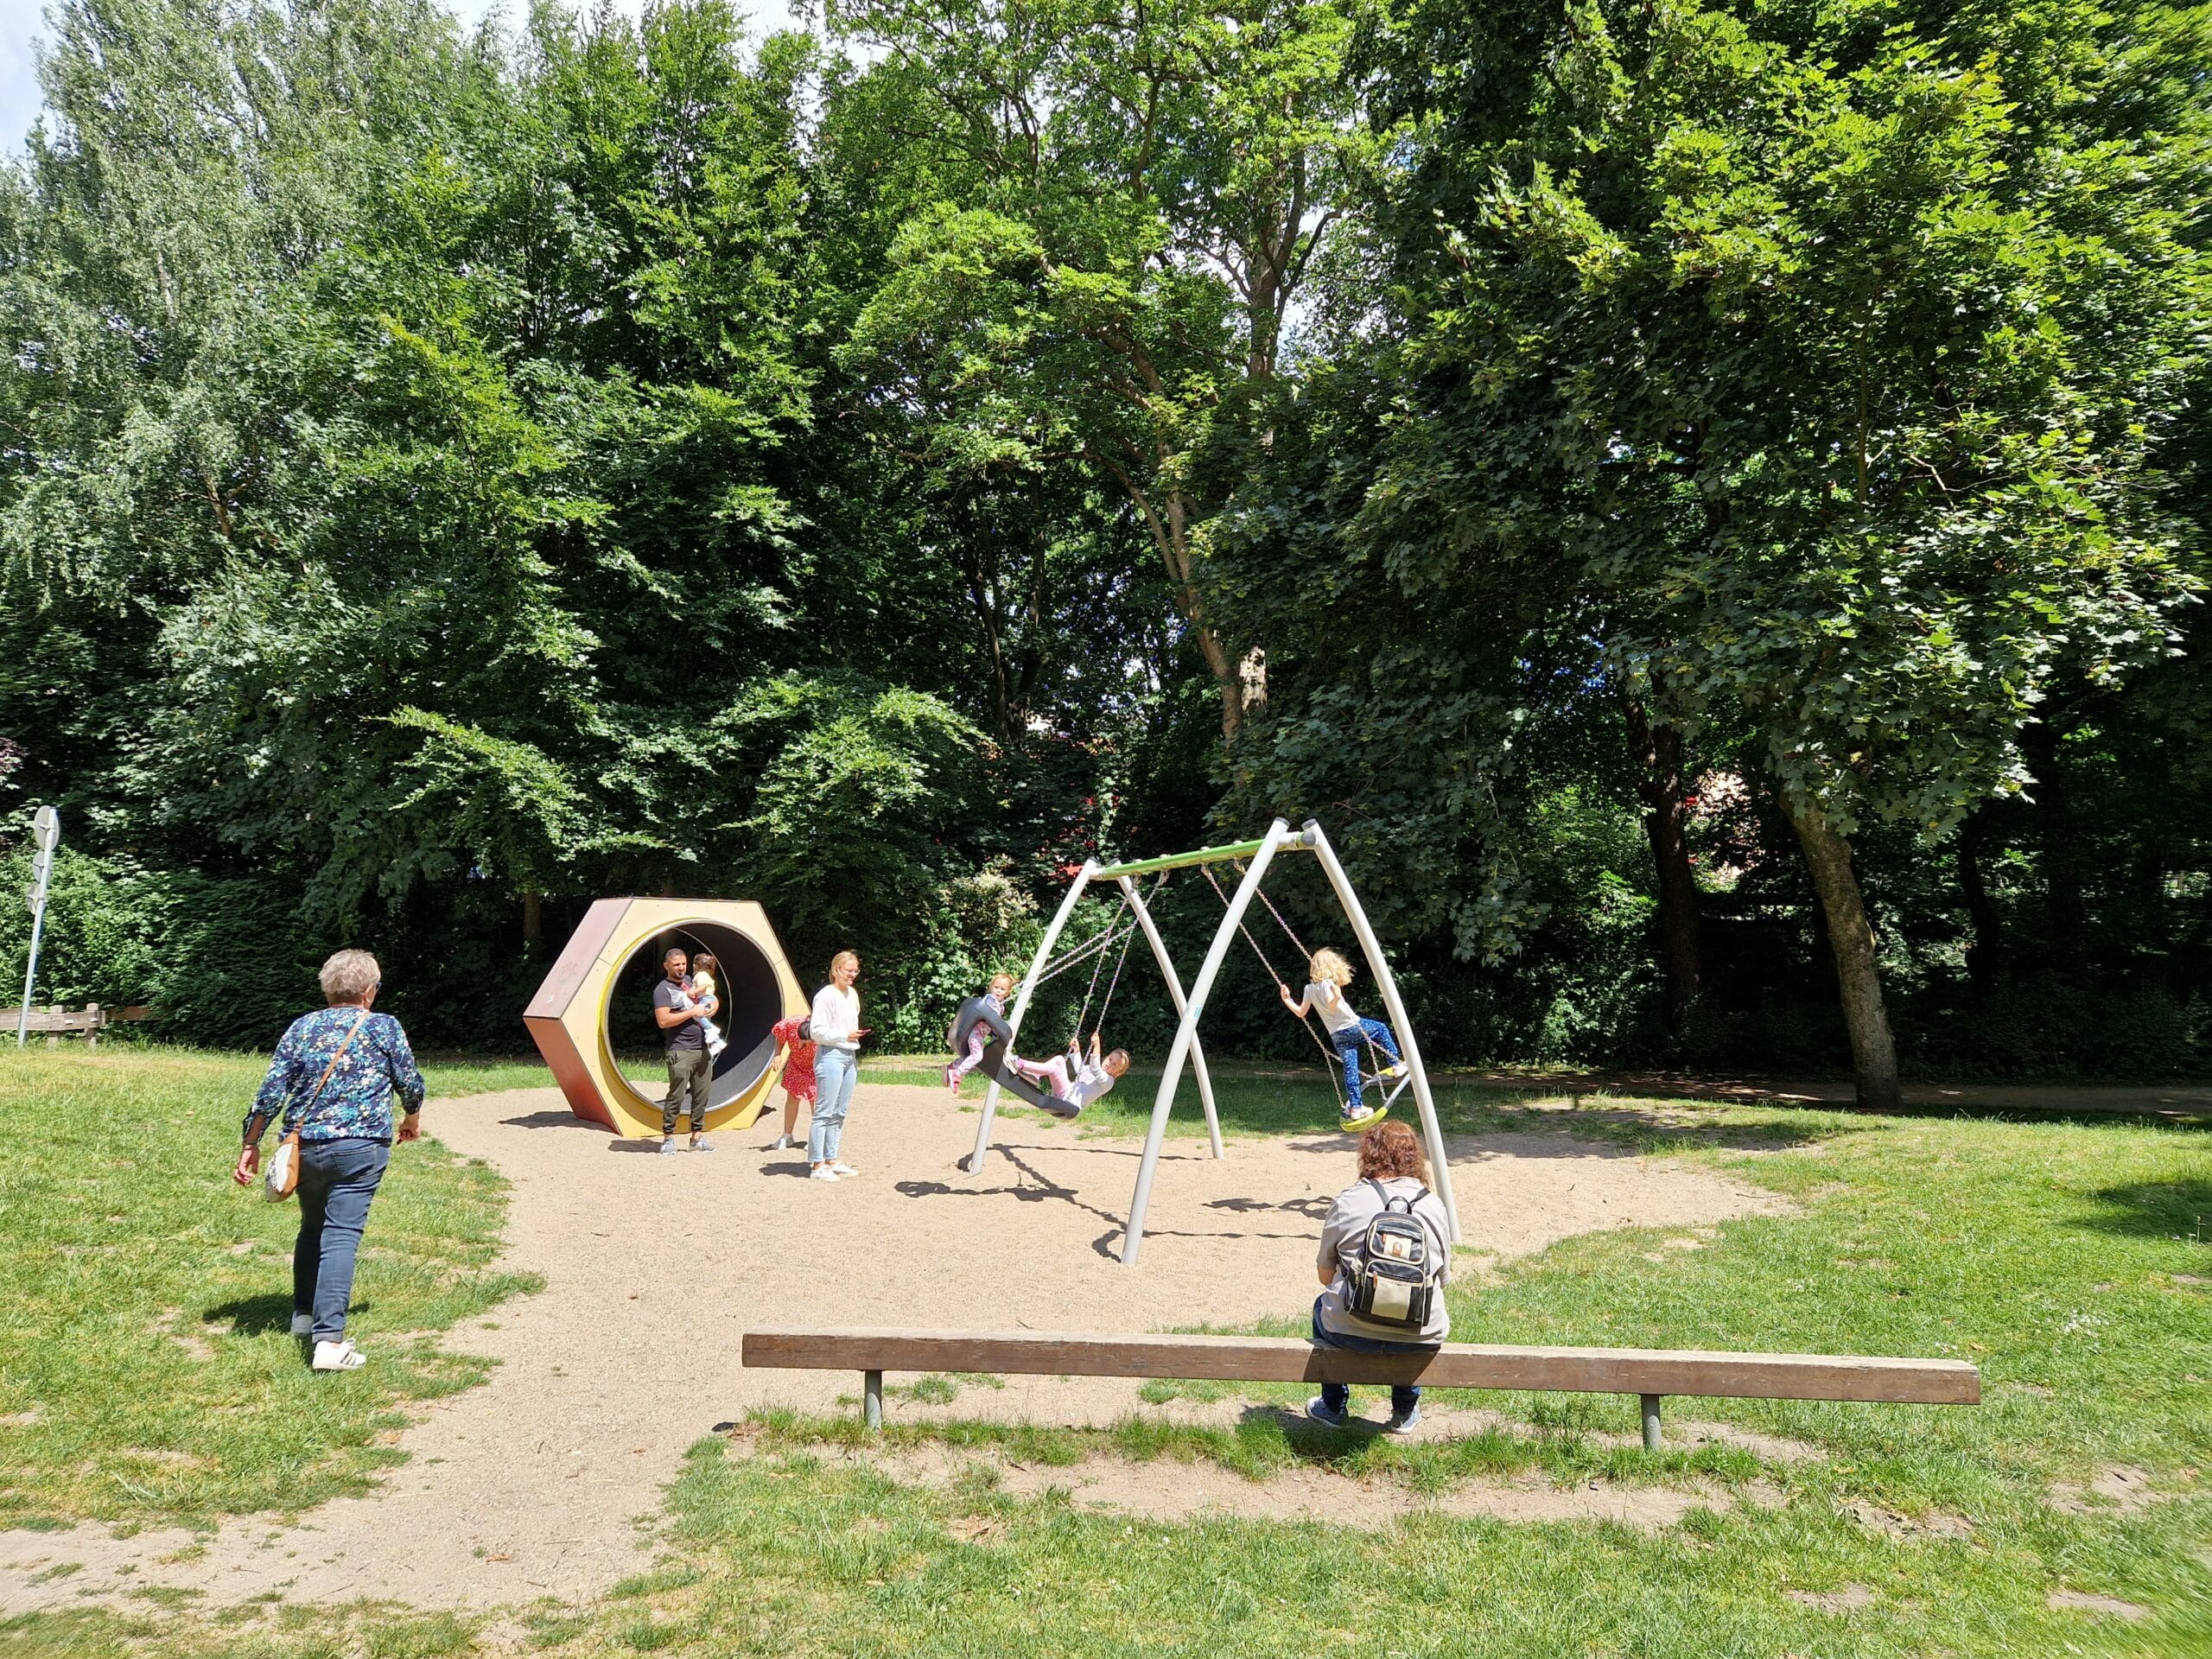 Auf dem Bild ist der Spielplatz im Stadtpark Gronau zu sehen. Es spielen Kinder auf den Spielgeräten.